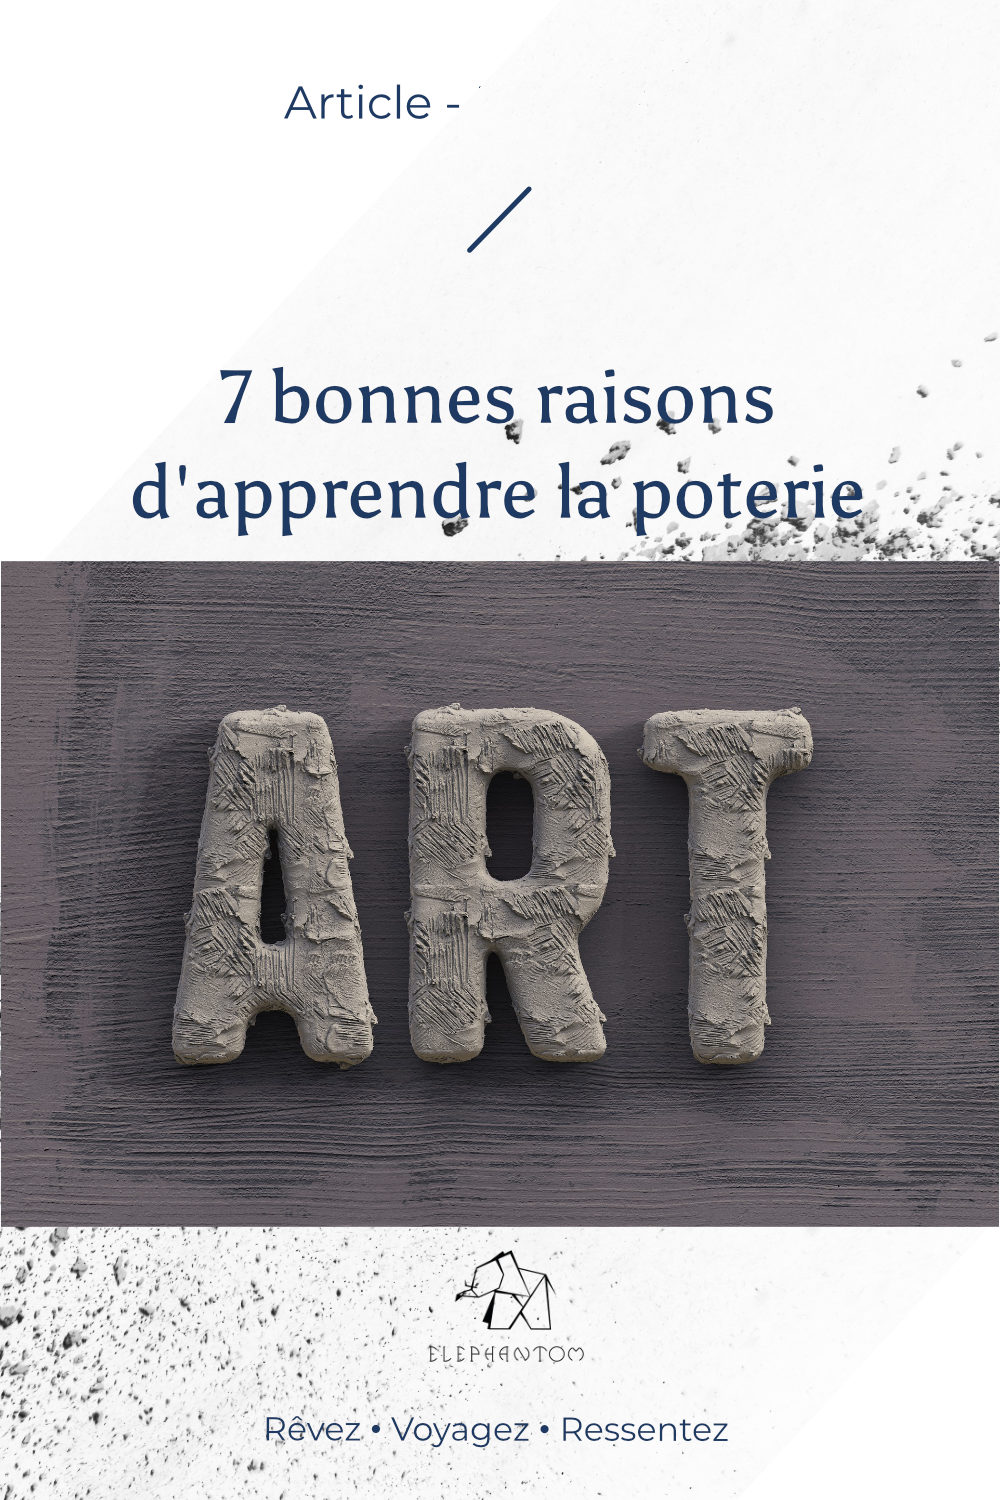 7_raisons_apprendre_poterie/elephantom_design_article-blog-7-bonnes-raisons-d-apprendre-la-poterie.jpg